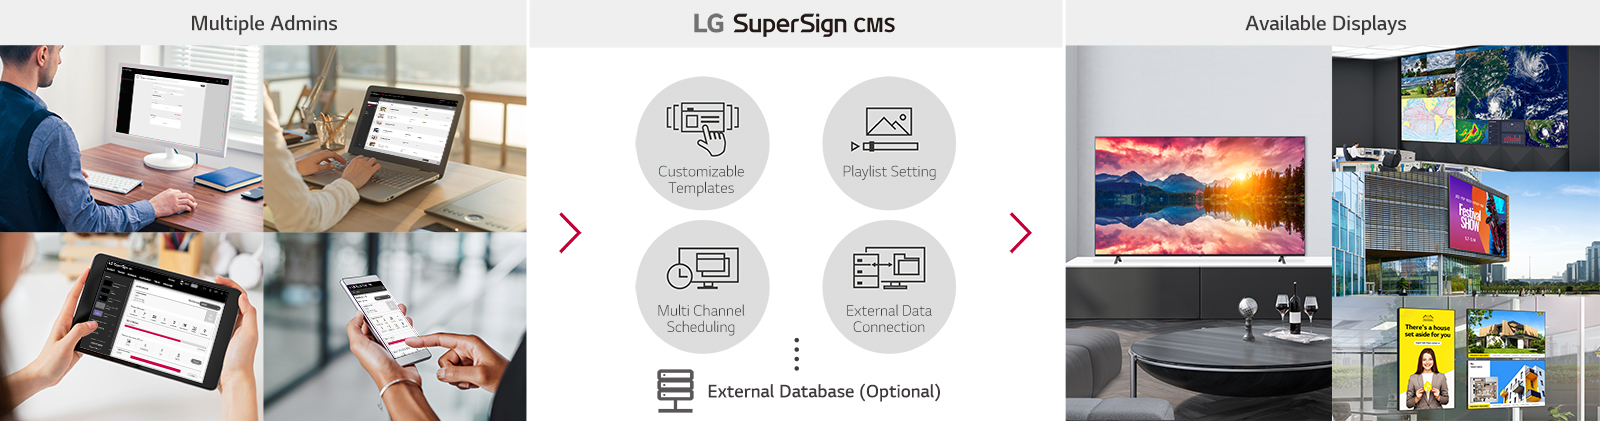 Gestione versatile dei contenuti con LG SuperSign CMS